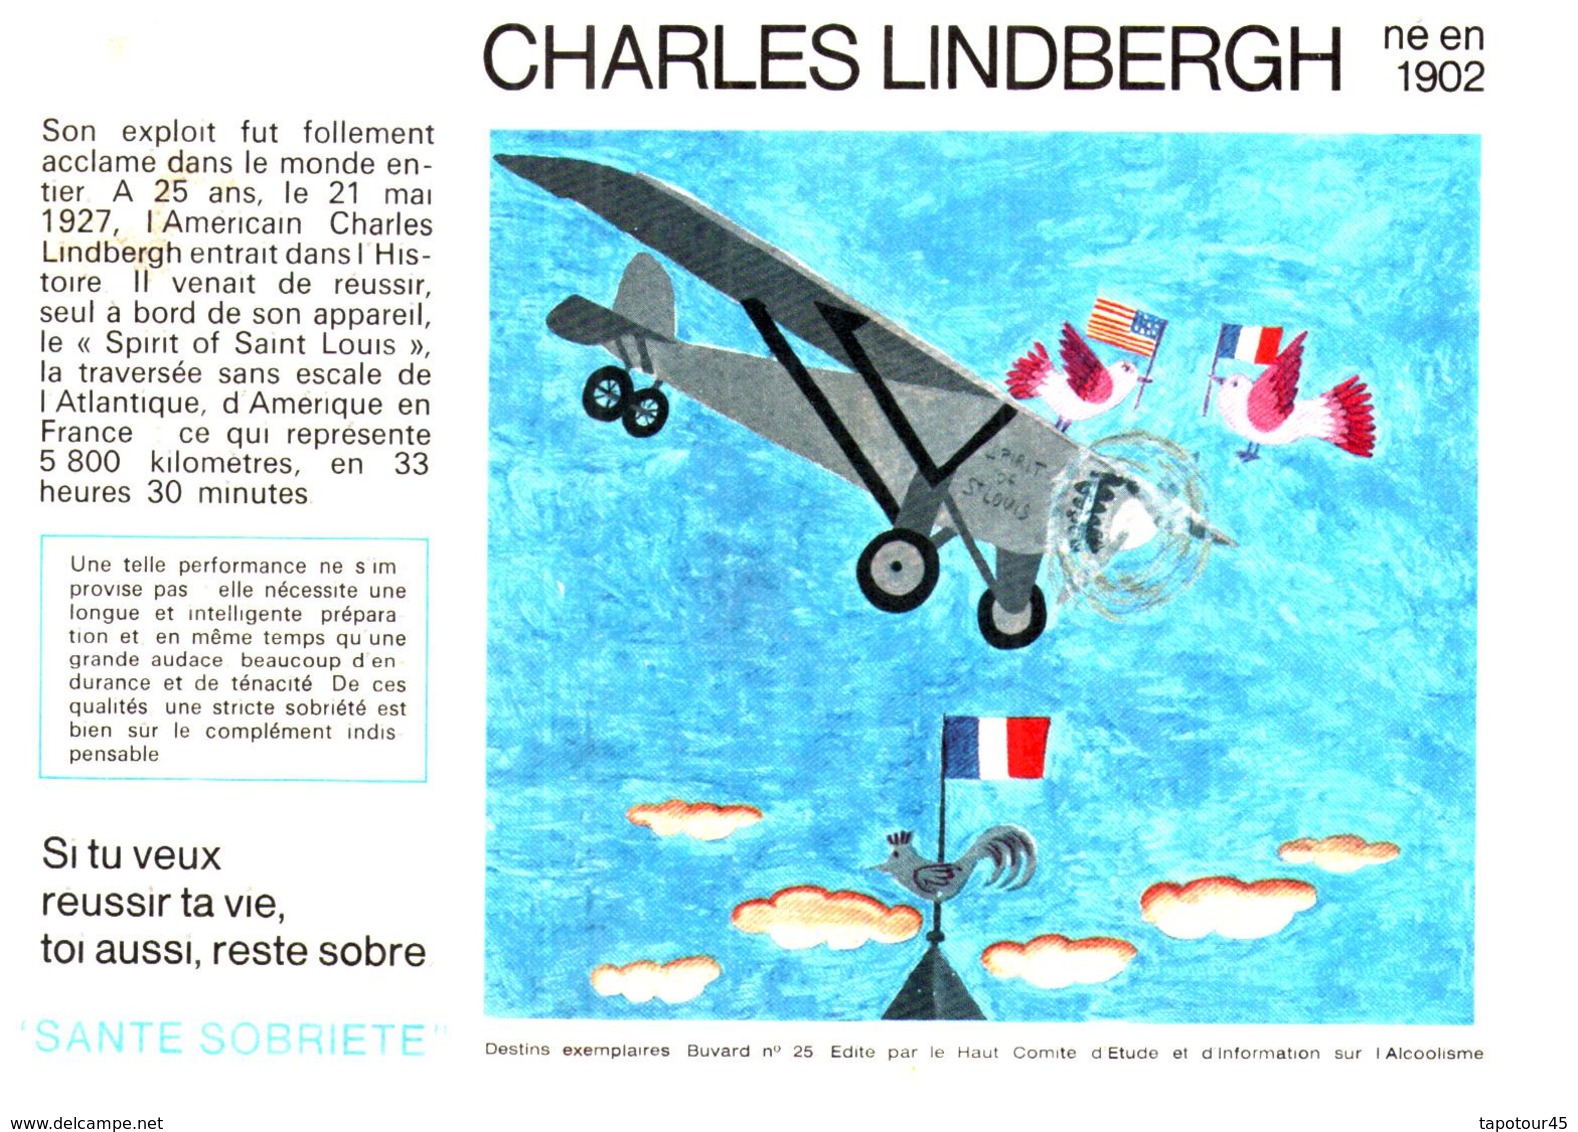 S S A/Buvard Sécurité Sobriété Info Alcolisme "Charles Lindbergh" (Santé Sobriété) (N=9) - S